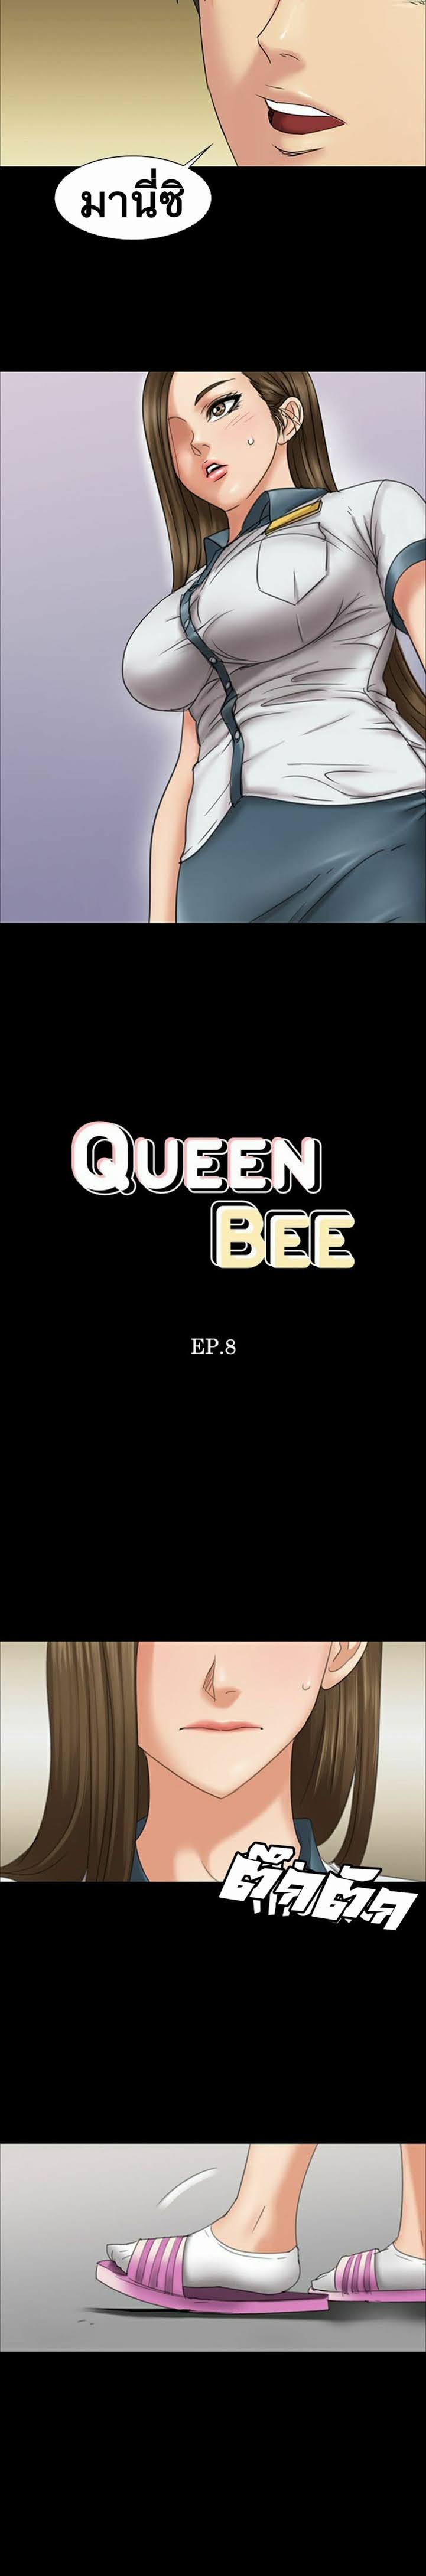 Queen Bee 8 (4)